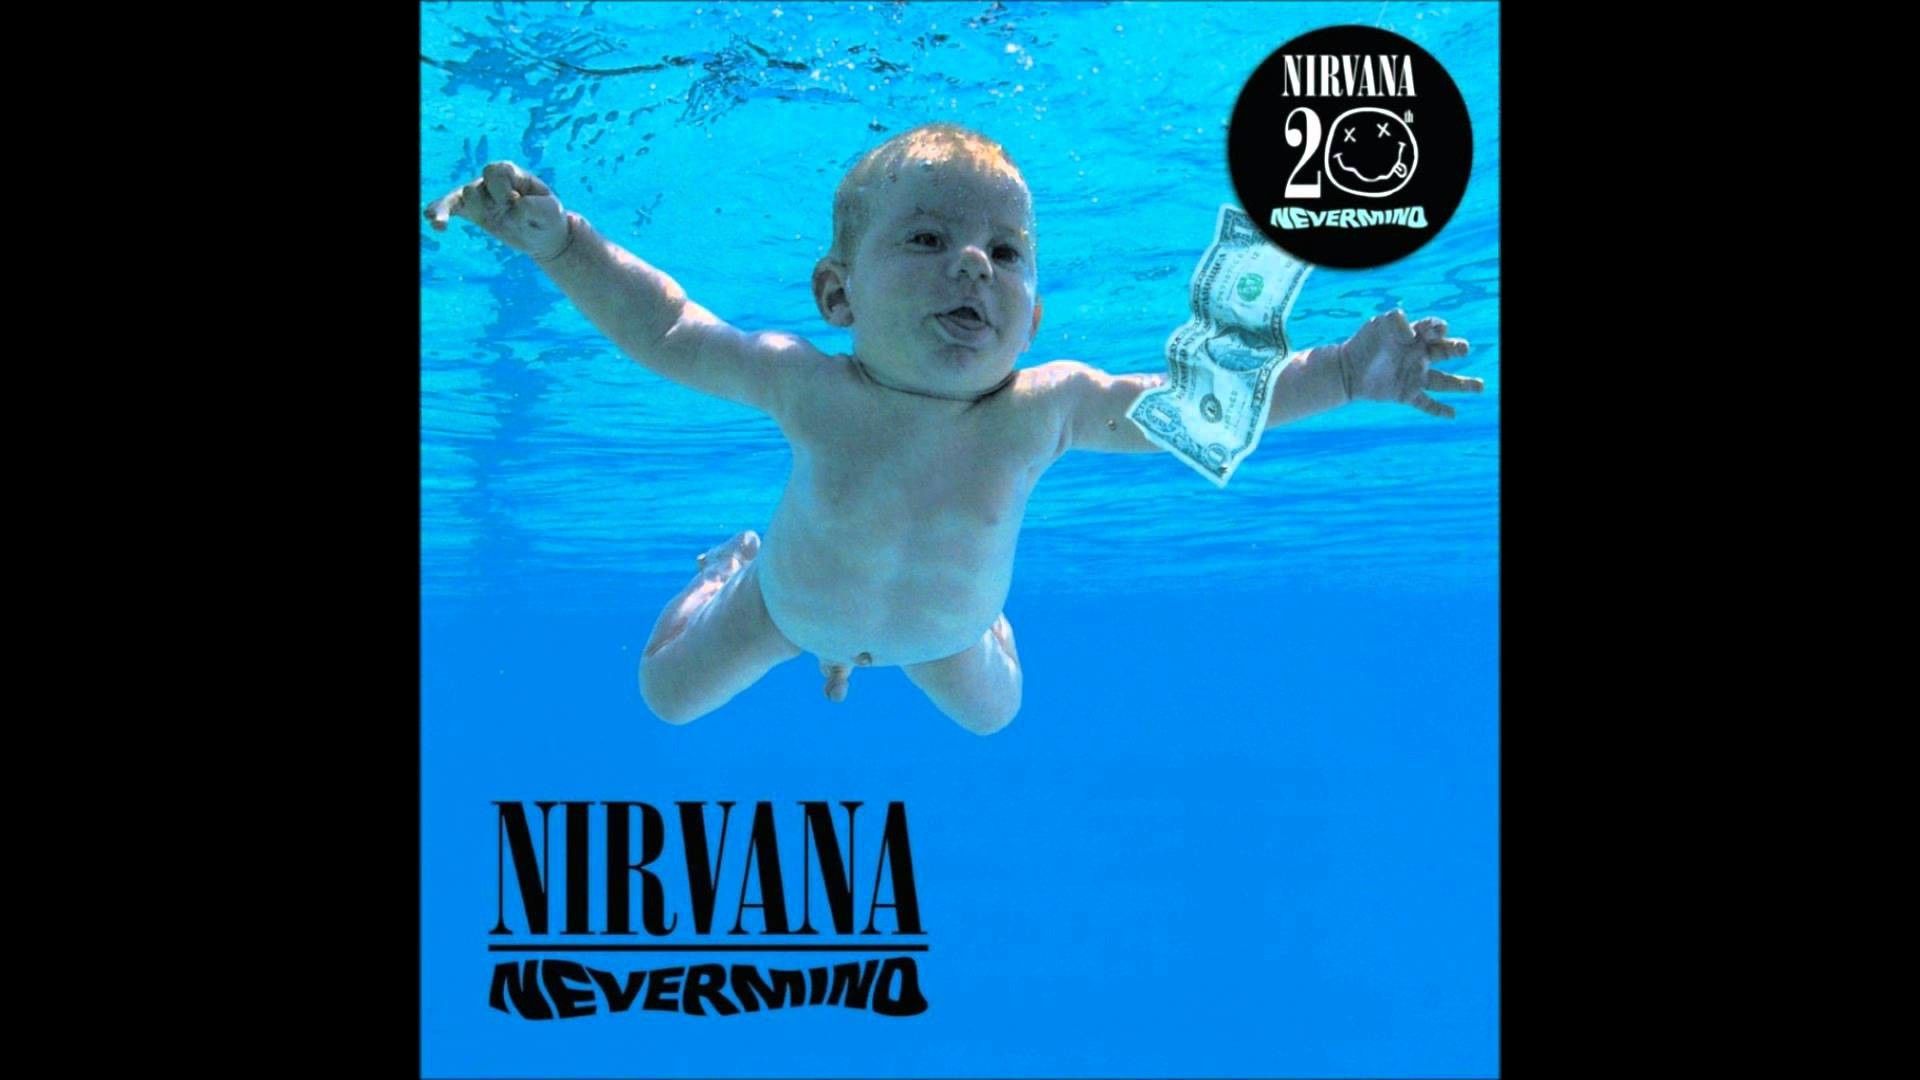 71+] Nirvana Logo Wallpaper - WallpaperSafari